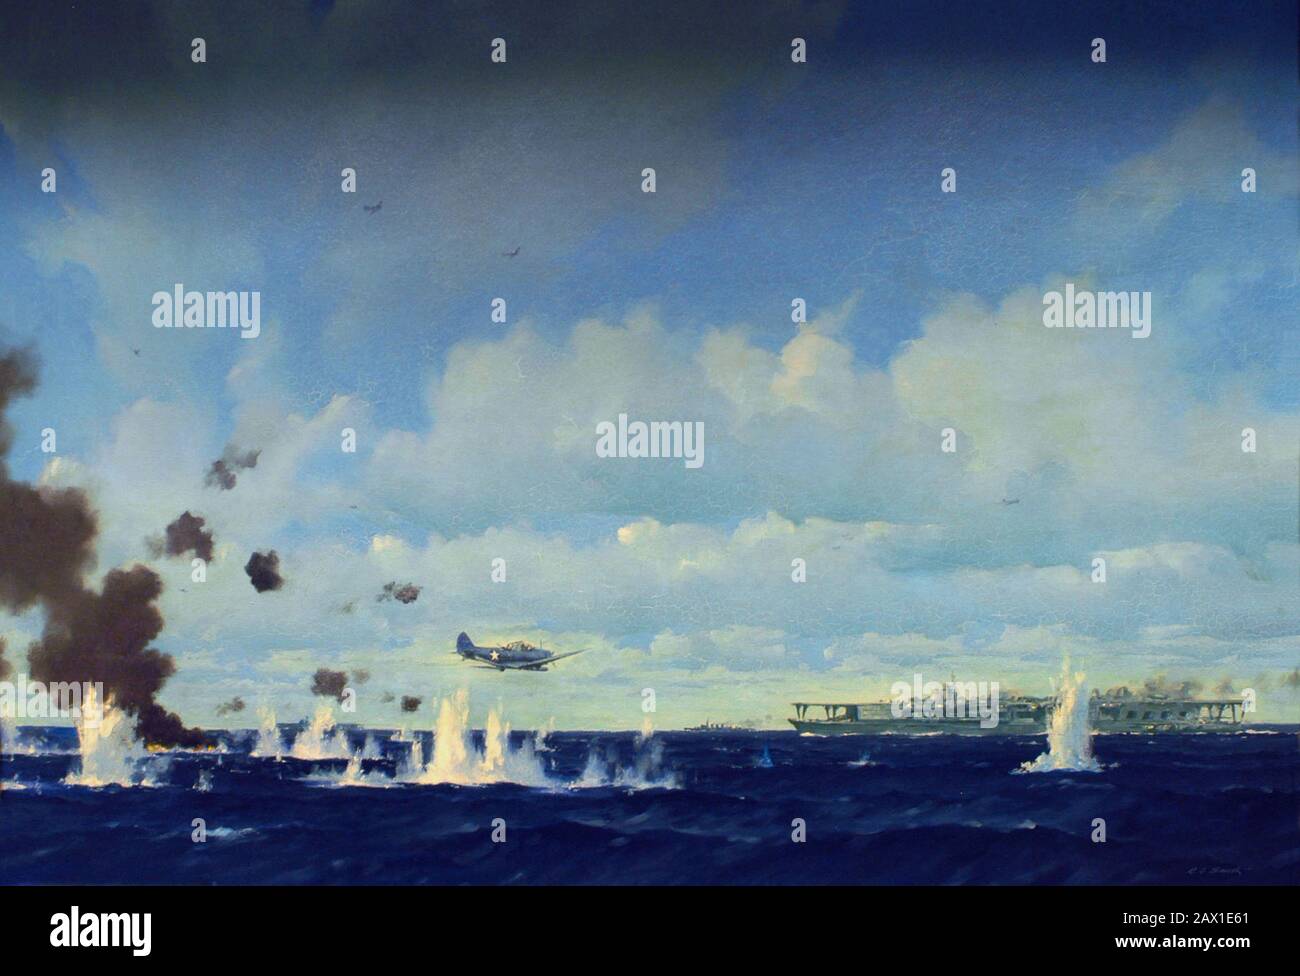 1942 , 4 JUIN , ÉTATS-UNIS : BATAILLE DE MIDWAY . Œuvres d'art par E.S. Smith. Peinture représentant un avion torpille de dévastateur Douglas TBD-1 de la marine américaine faisant une attaque contre un porte-avions japonais à la bataille de Midway, 4 juin 1942. - WORLD WAR II - WWII - SECONDA GUERRA MONDIALE - foto storiche storica - PHOTOS D'HISTOIRE - Stati Uniti d'Amérique - bombardement - nef - Marina - Navy - mare - Sea - attaco aereo - USA - GIAPPONE - GUERRA DEL PACIFICO - OCEANO - OCEAN PACIFIC - BATTAGLIA - BATAILLE - aéroplano - Îles - Atoll Midway - la bataille de Midway - HAWAY - AVIAZIONE - portaerei ---- ARCHE Banque D'Images